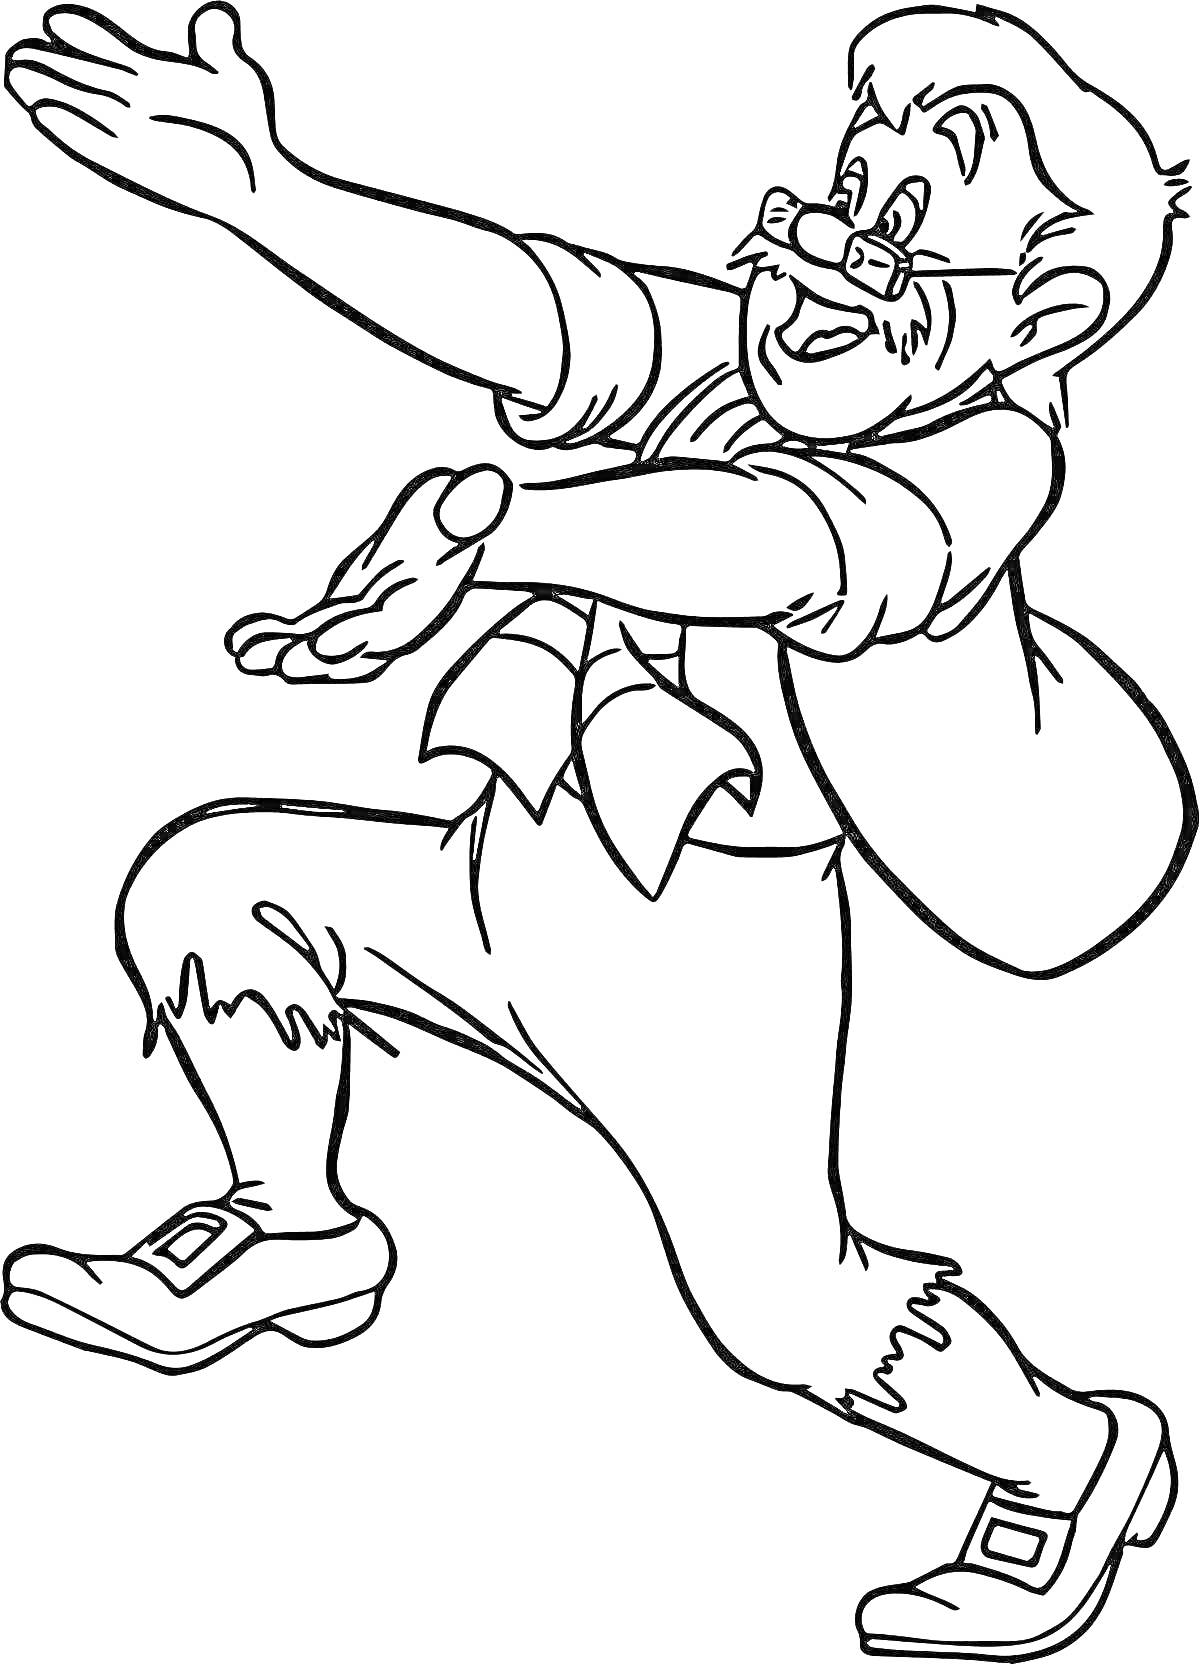 Раскраска Старик с усами и бородой в очках с вытянутыми руками, в пиджаке, порванных брюках и ботинках, несущий мешок